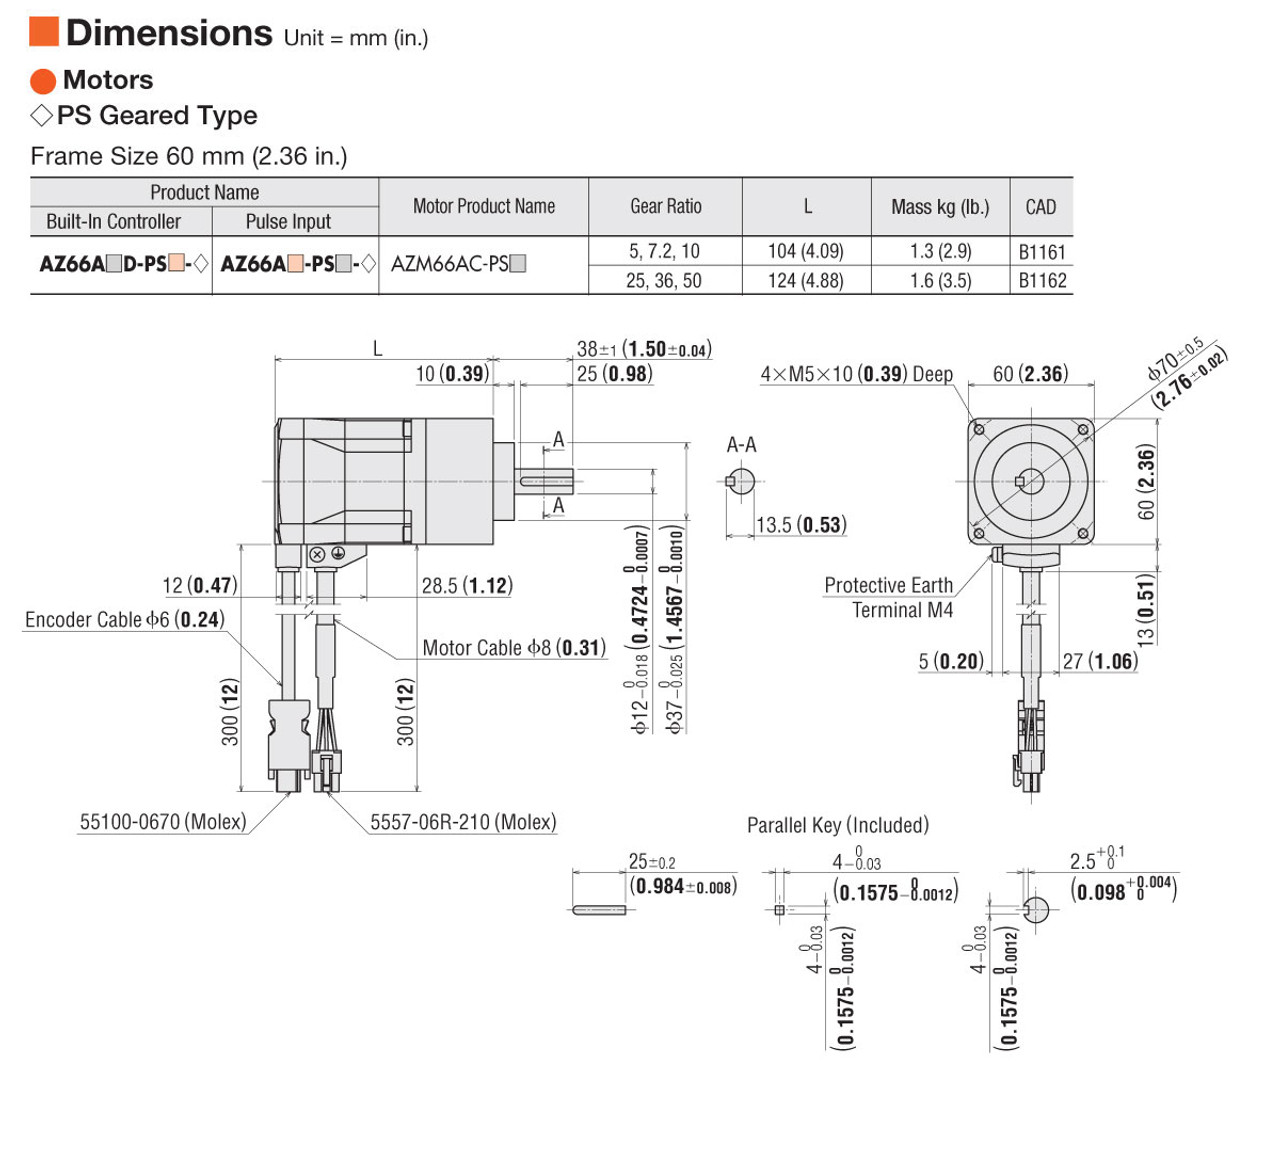 AZ66AA-PS25 - Dimensions